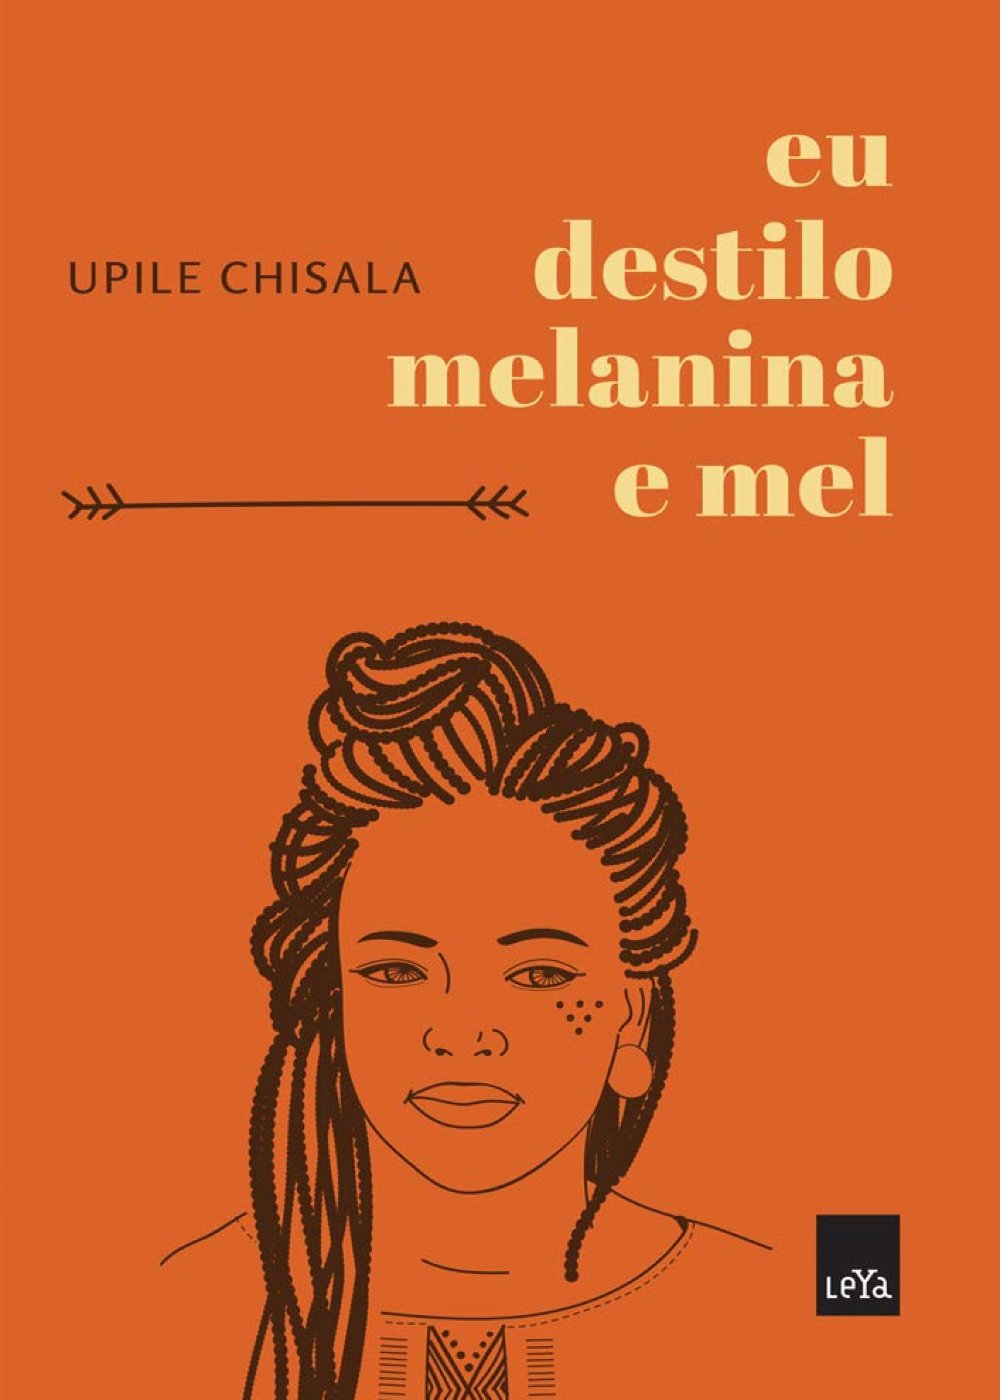 Eu destilo melanina e mel, de Upile Chisala  - livro - livros de autores negros - leitura - dica - https://stealthelook.com.br